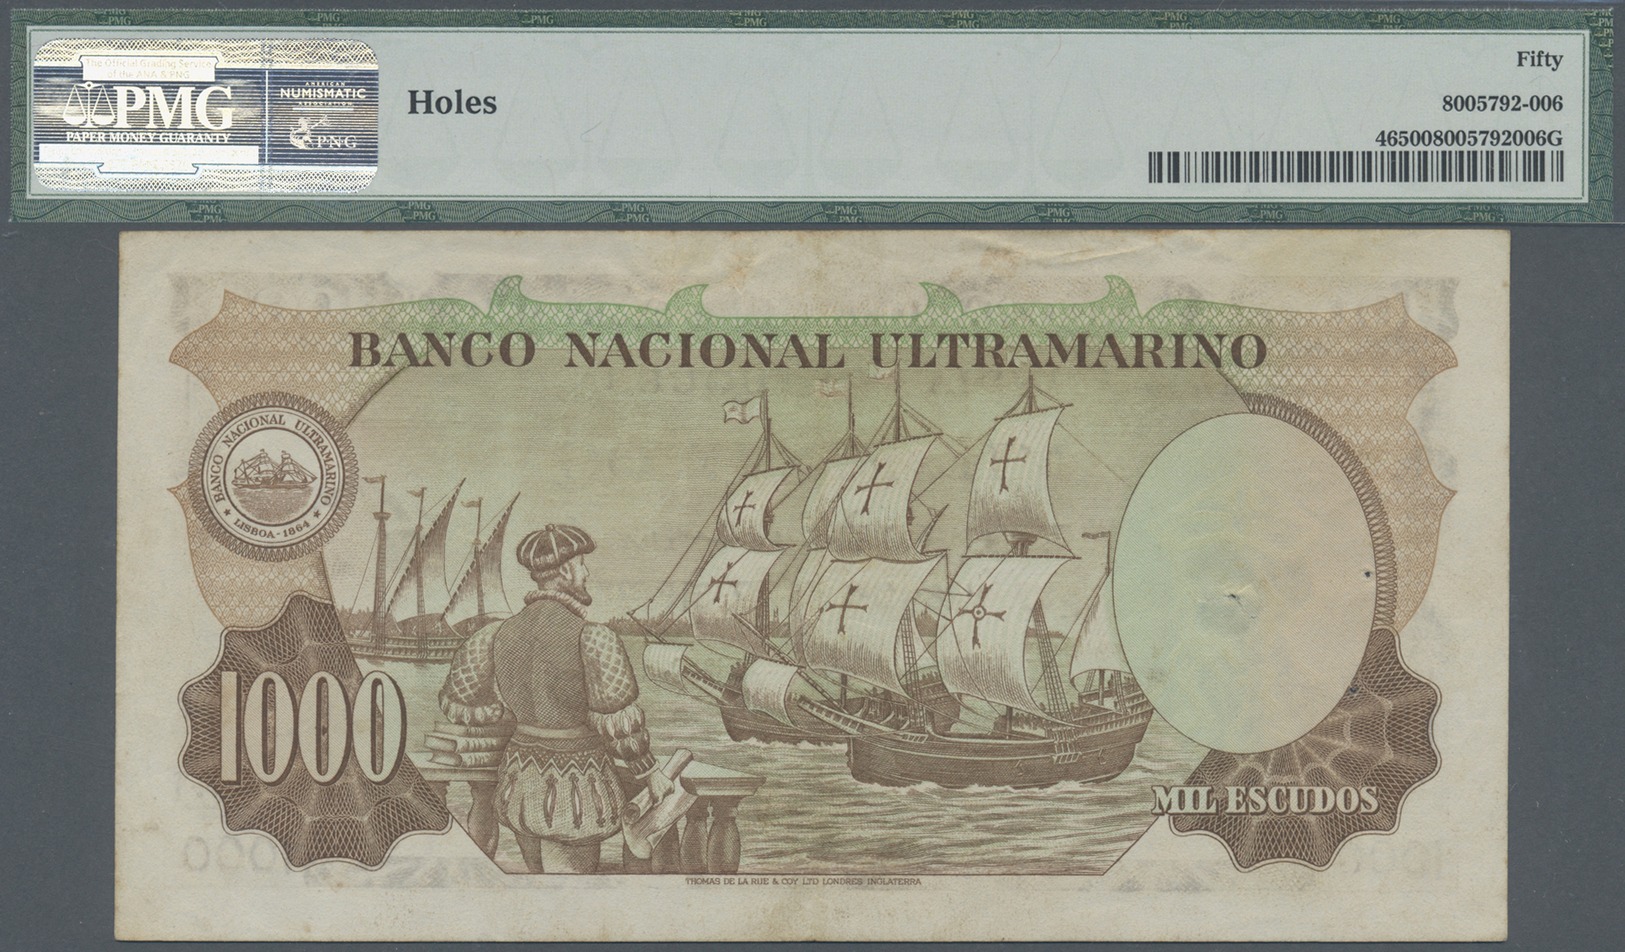 02023 Portuguese India / Portugiesisch Indien: Banco Nacional Ultramariono 1000 Escudos 1959, P.46, Very Rare High Denom - India